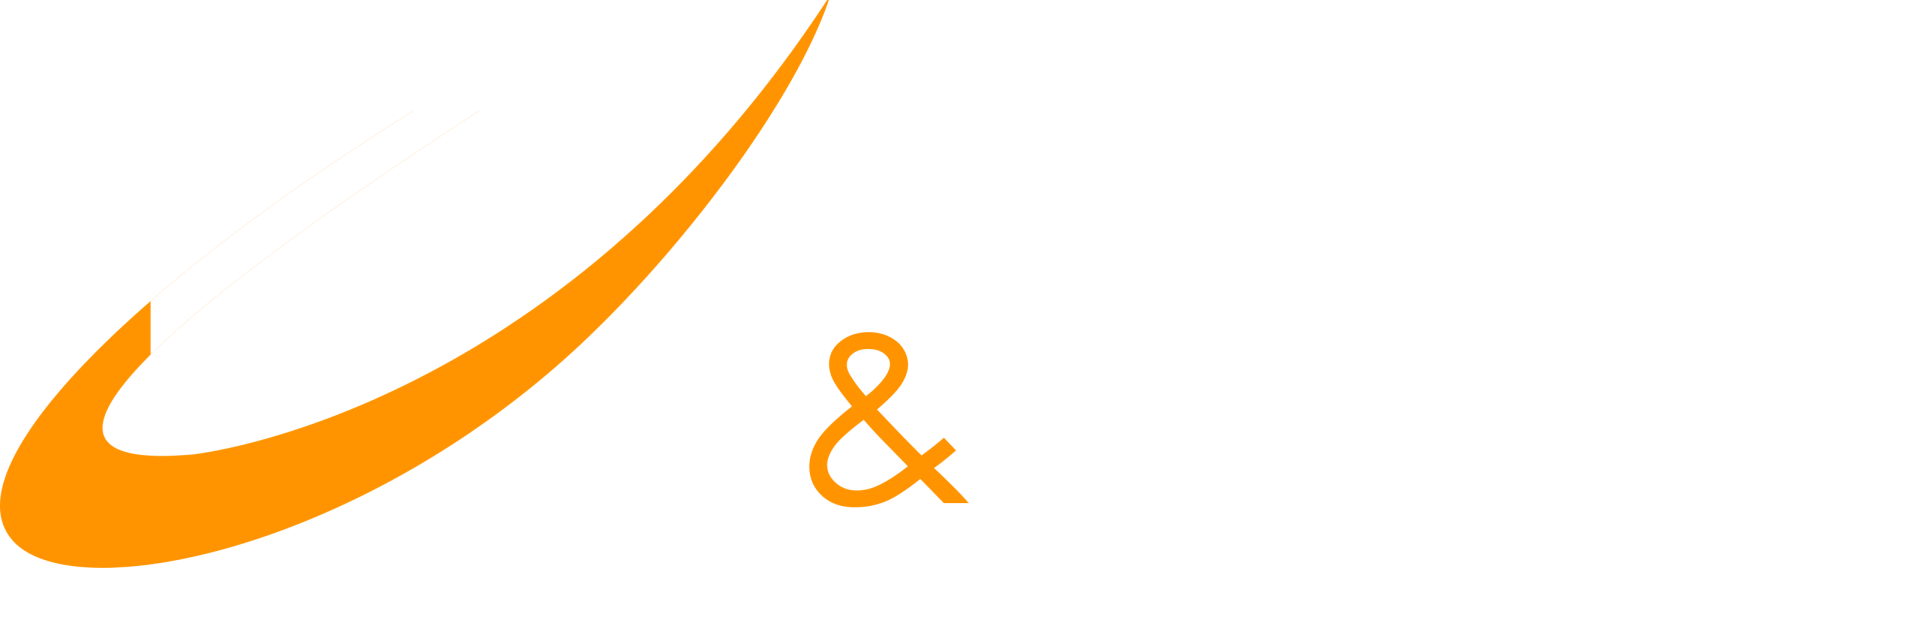 Brandão e Marmo Engenharia e Construções